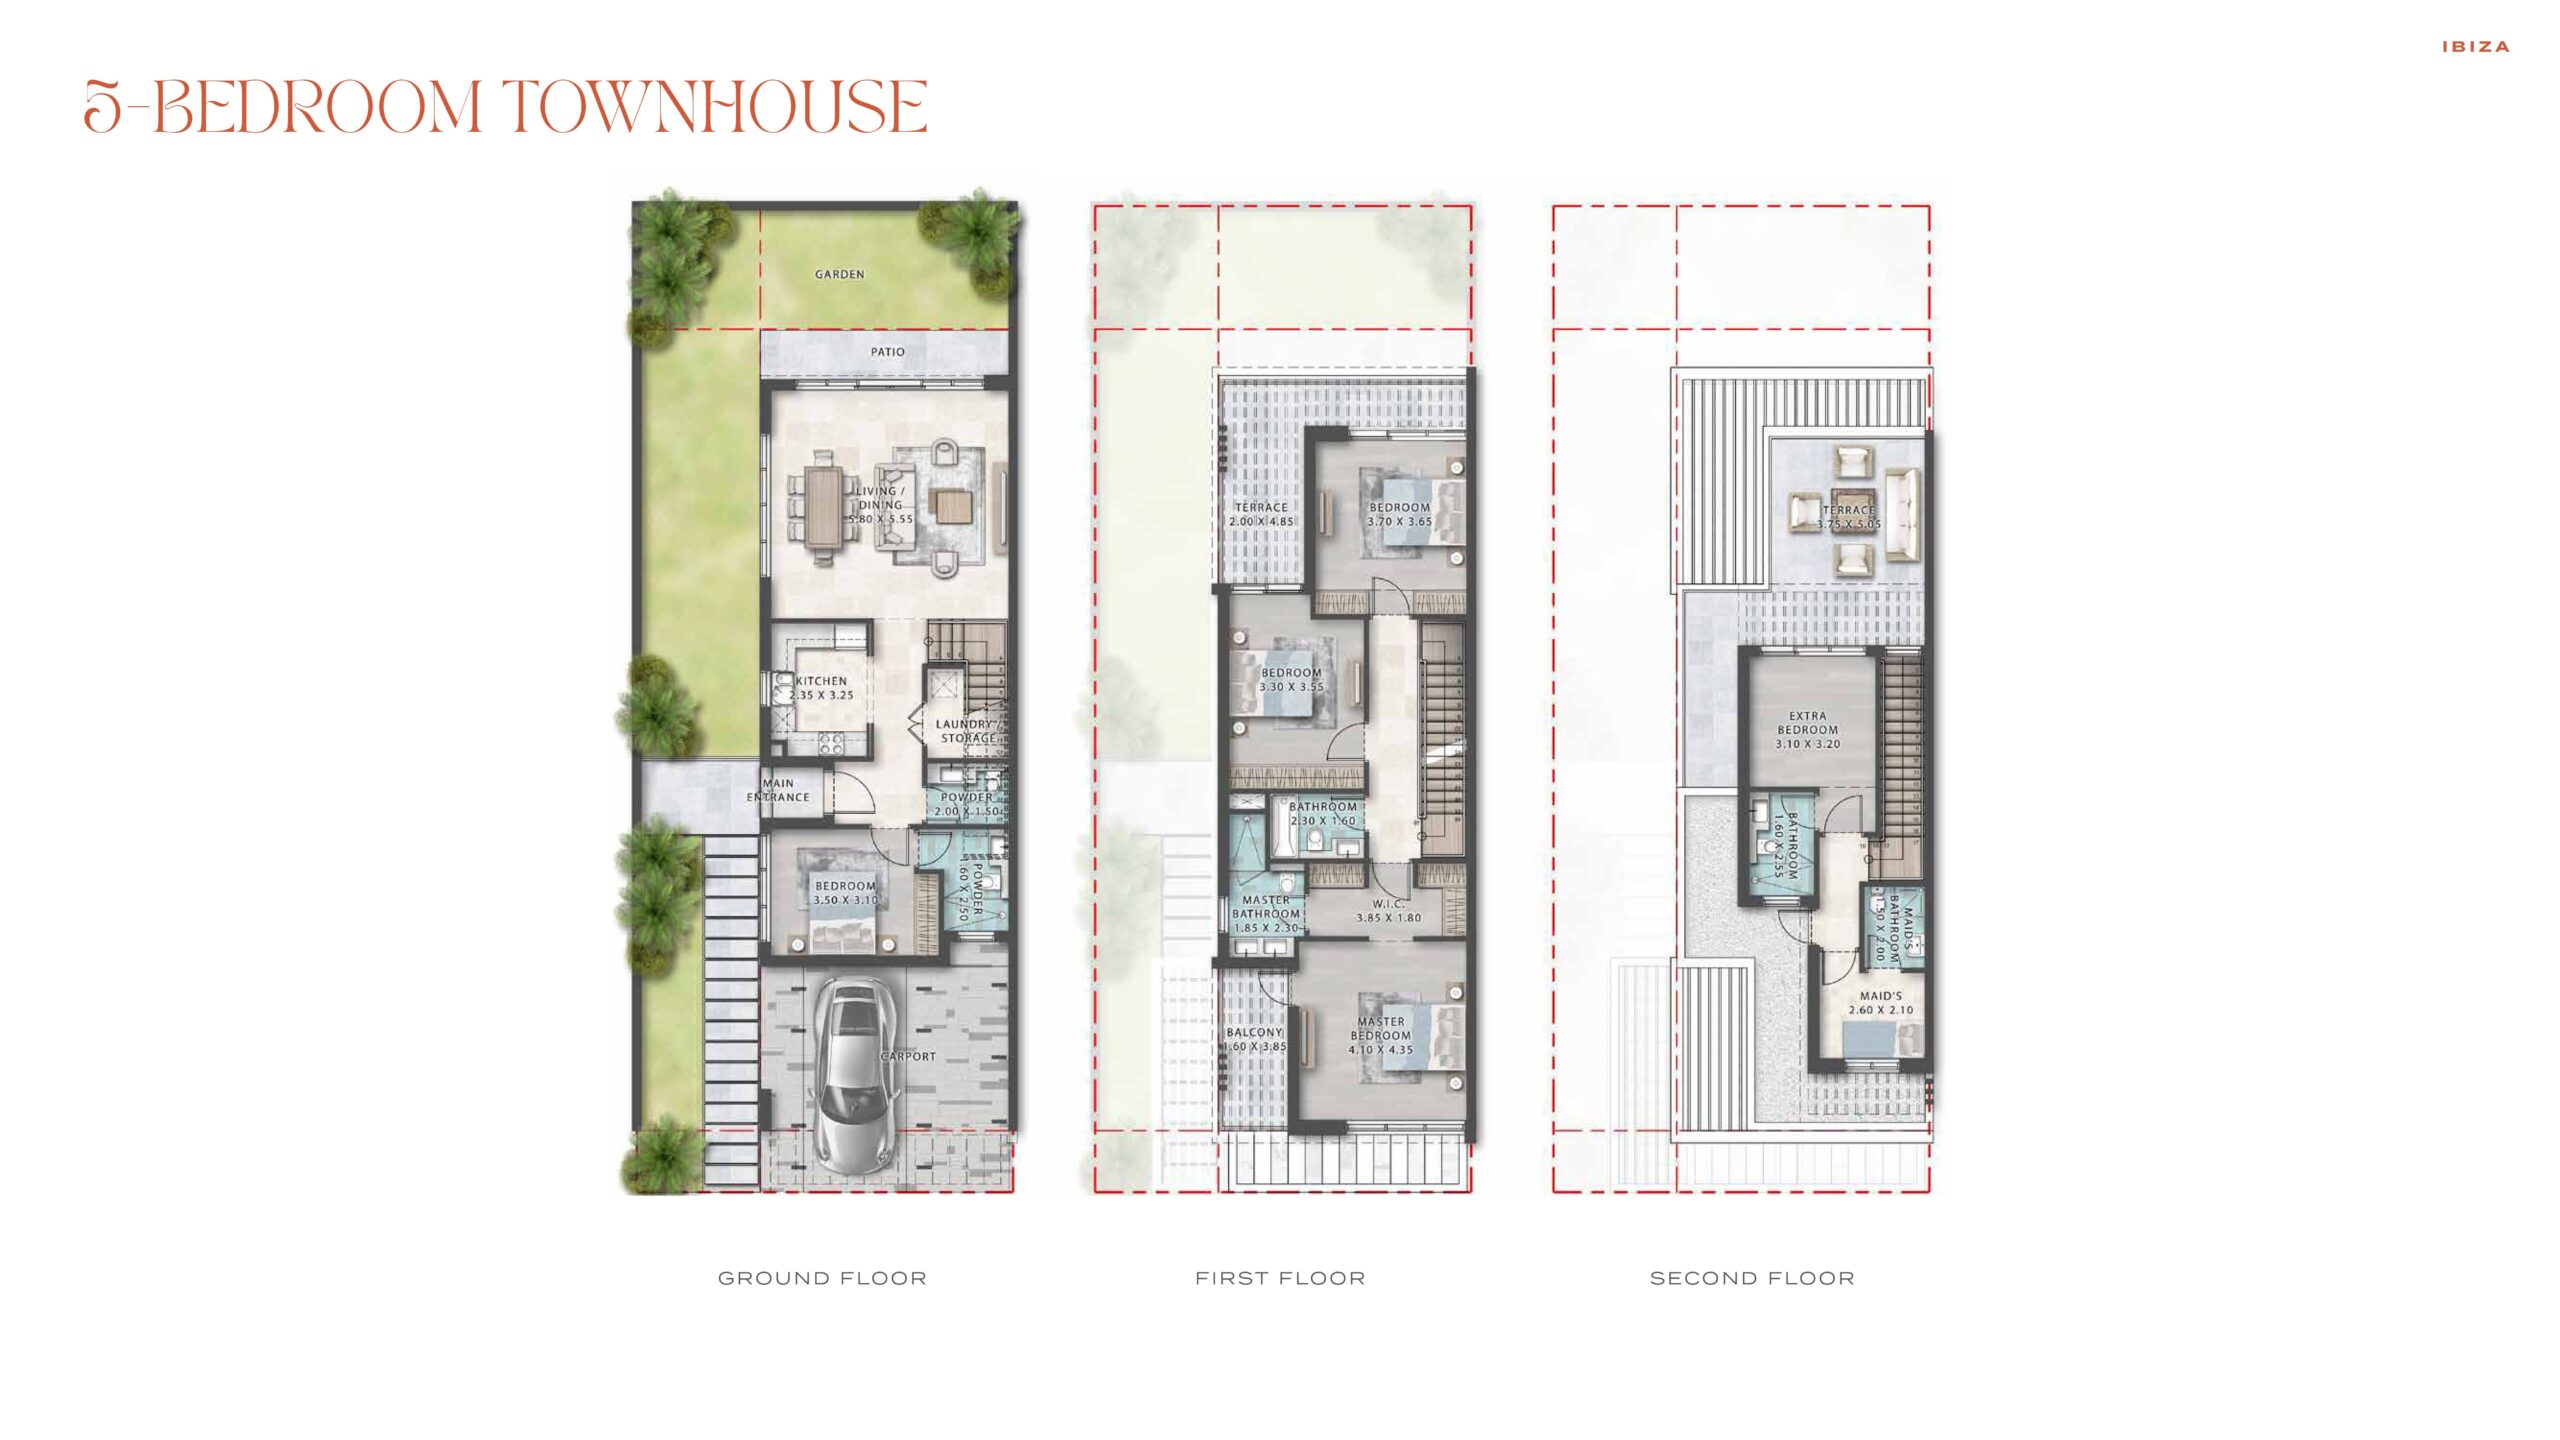 5 Bedroom Townhouse Floor Plans